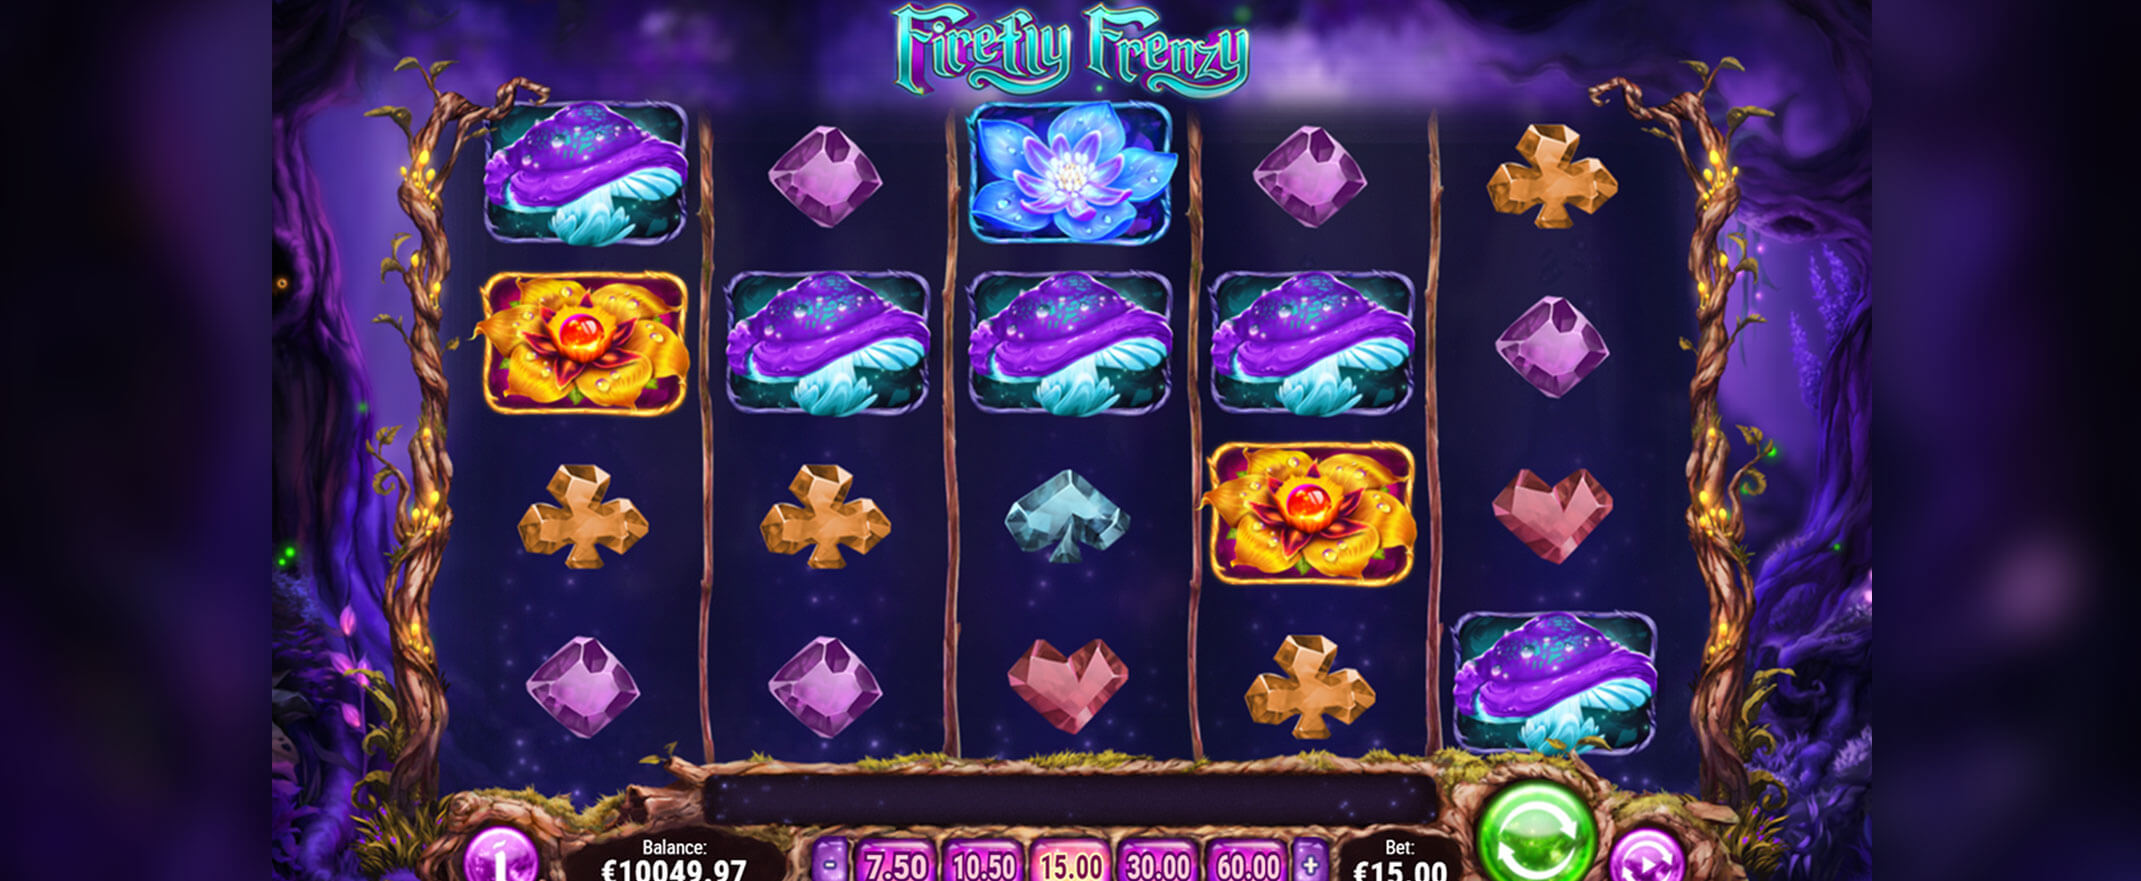 Firefly Frenzy Slots